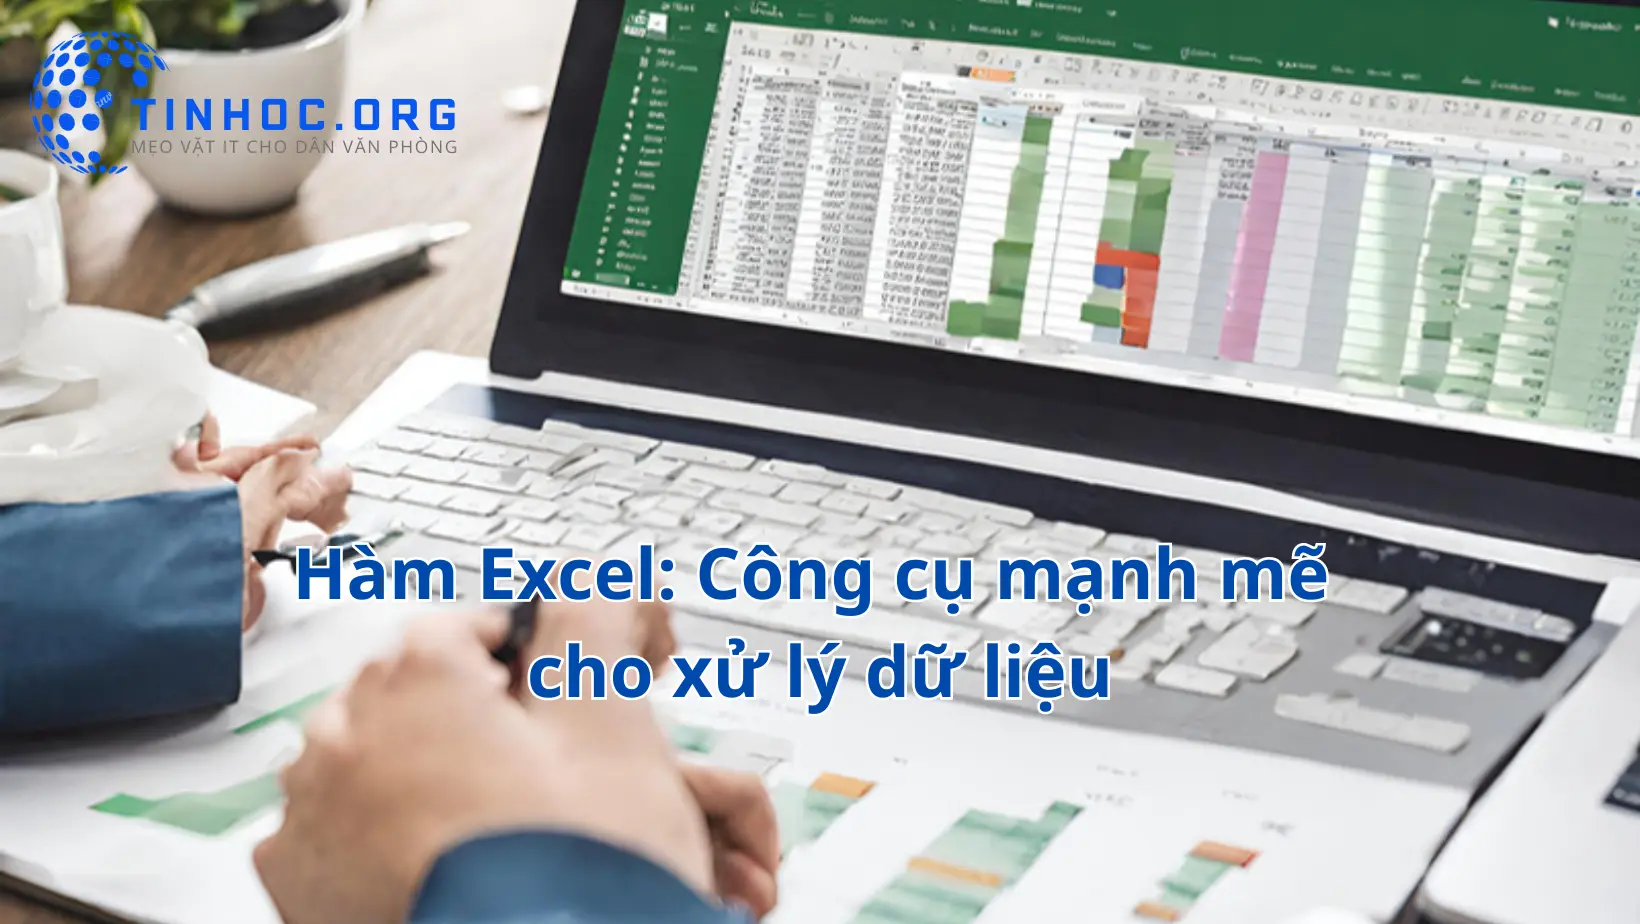 Hàm Excel: Công cụ mạnh mẽ cho xử lý dữ liệu